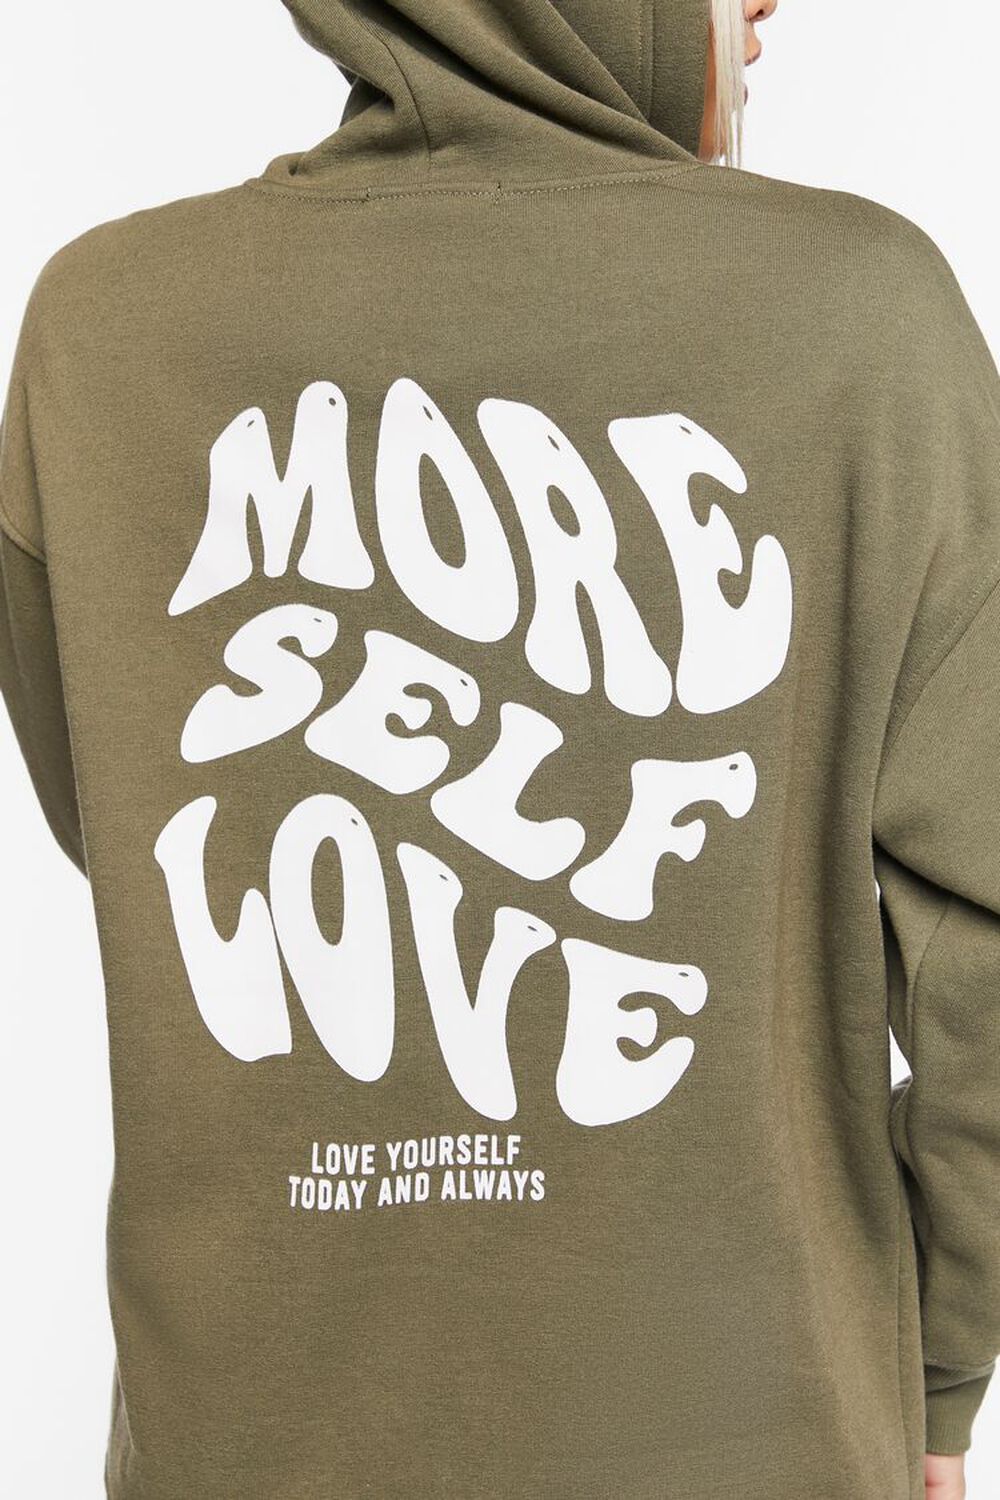 More Self Love Zip-Up Hoodie